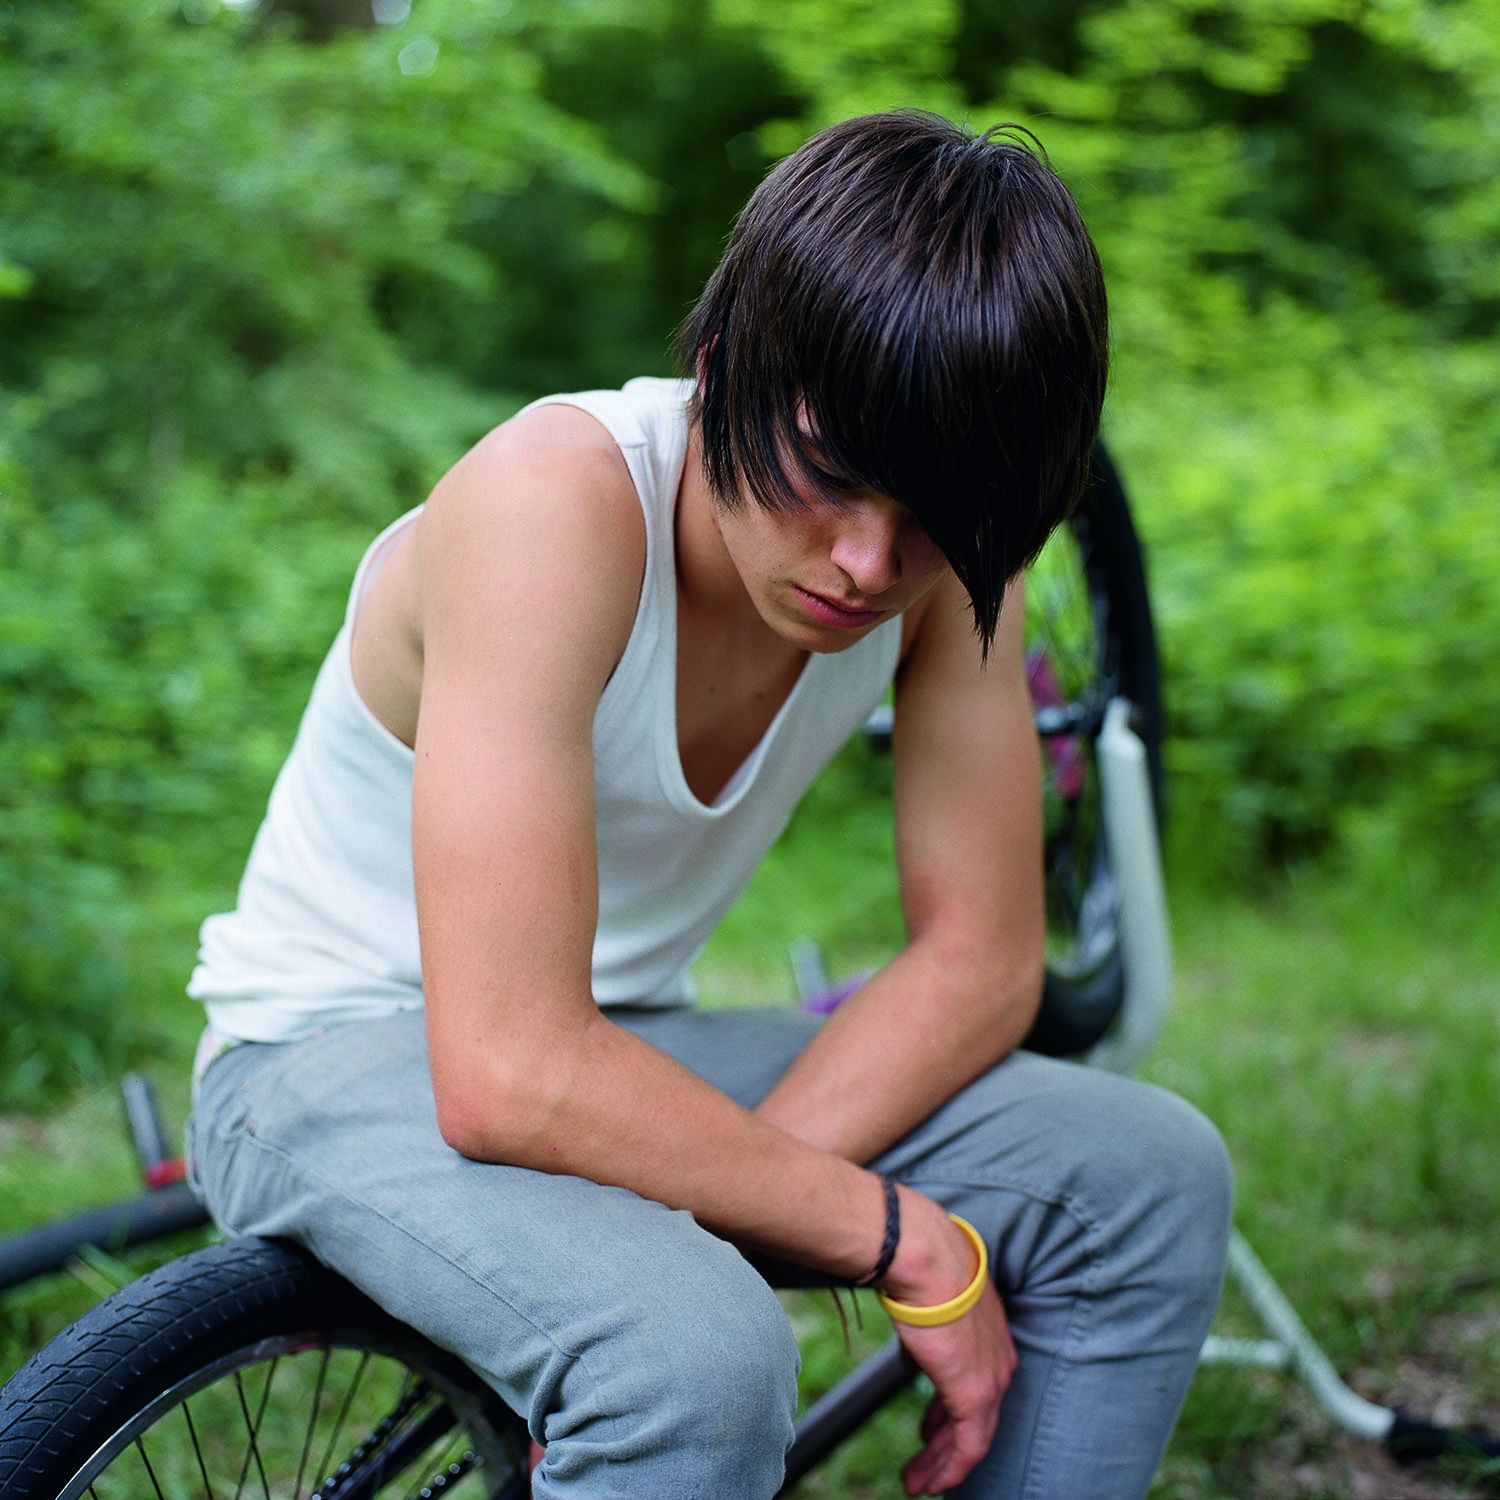 Matt on his bike, 2010